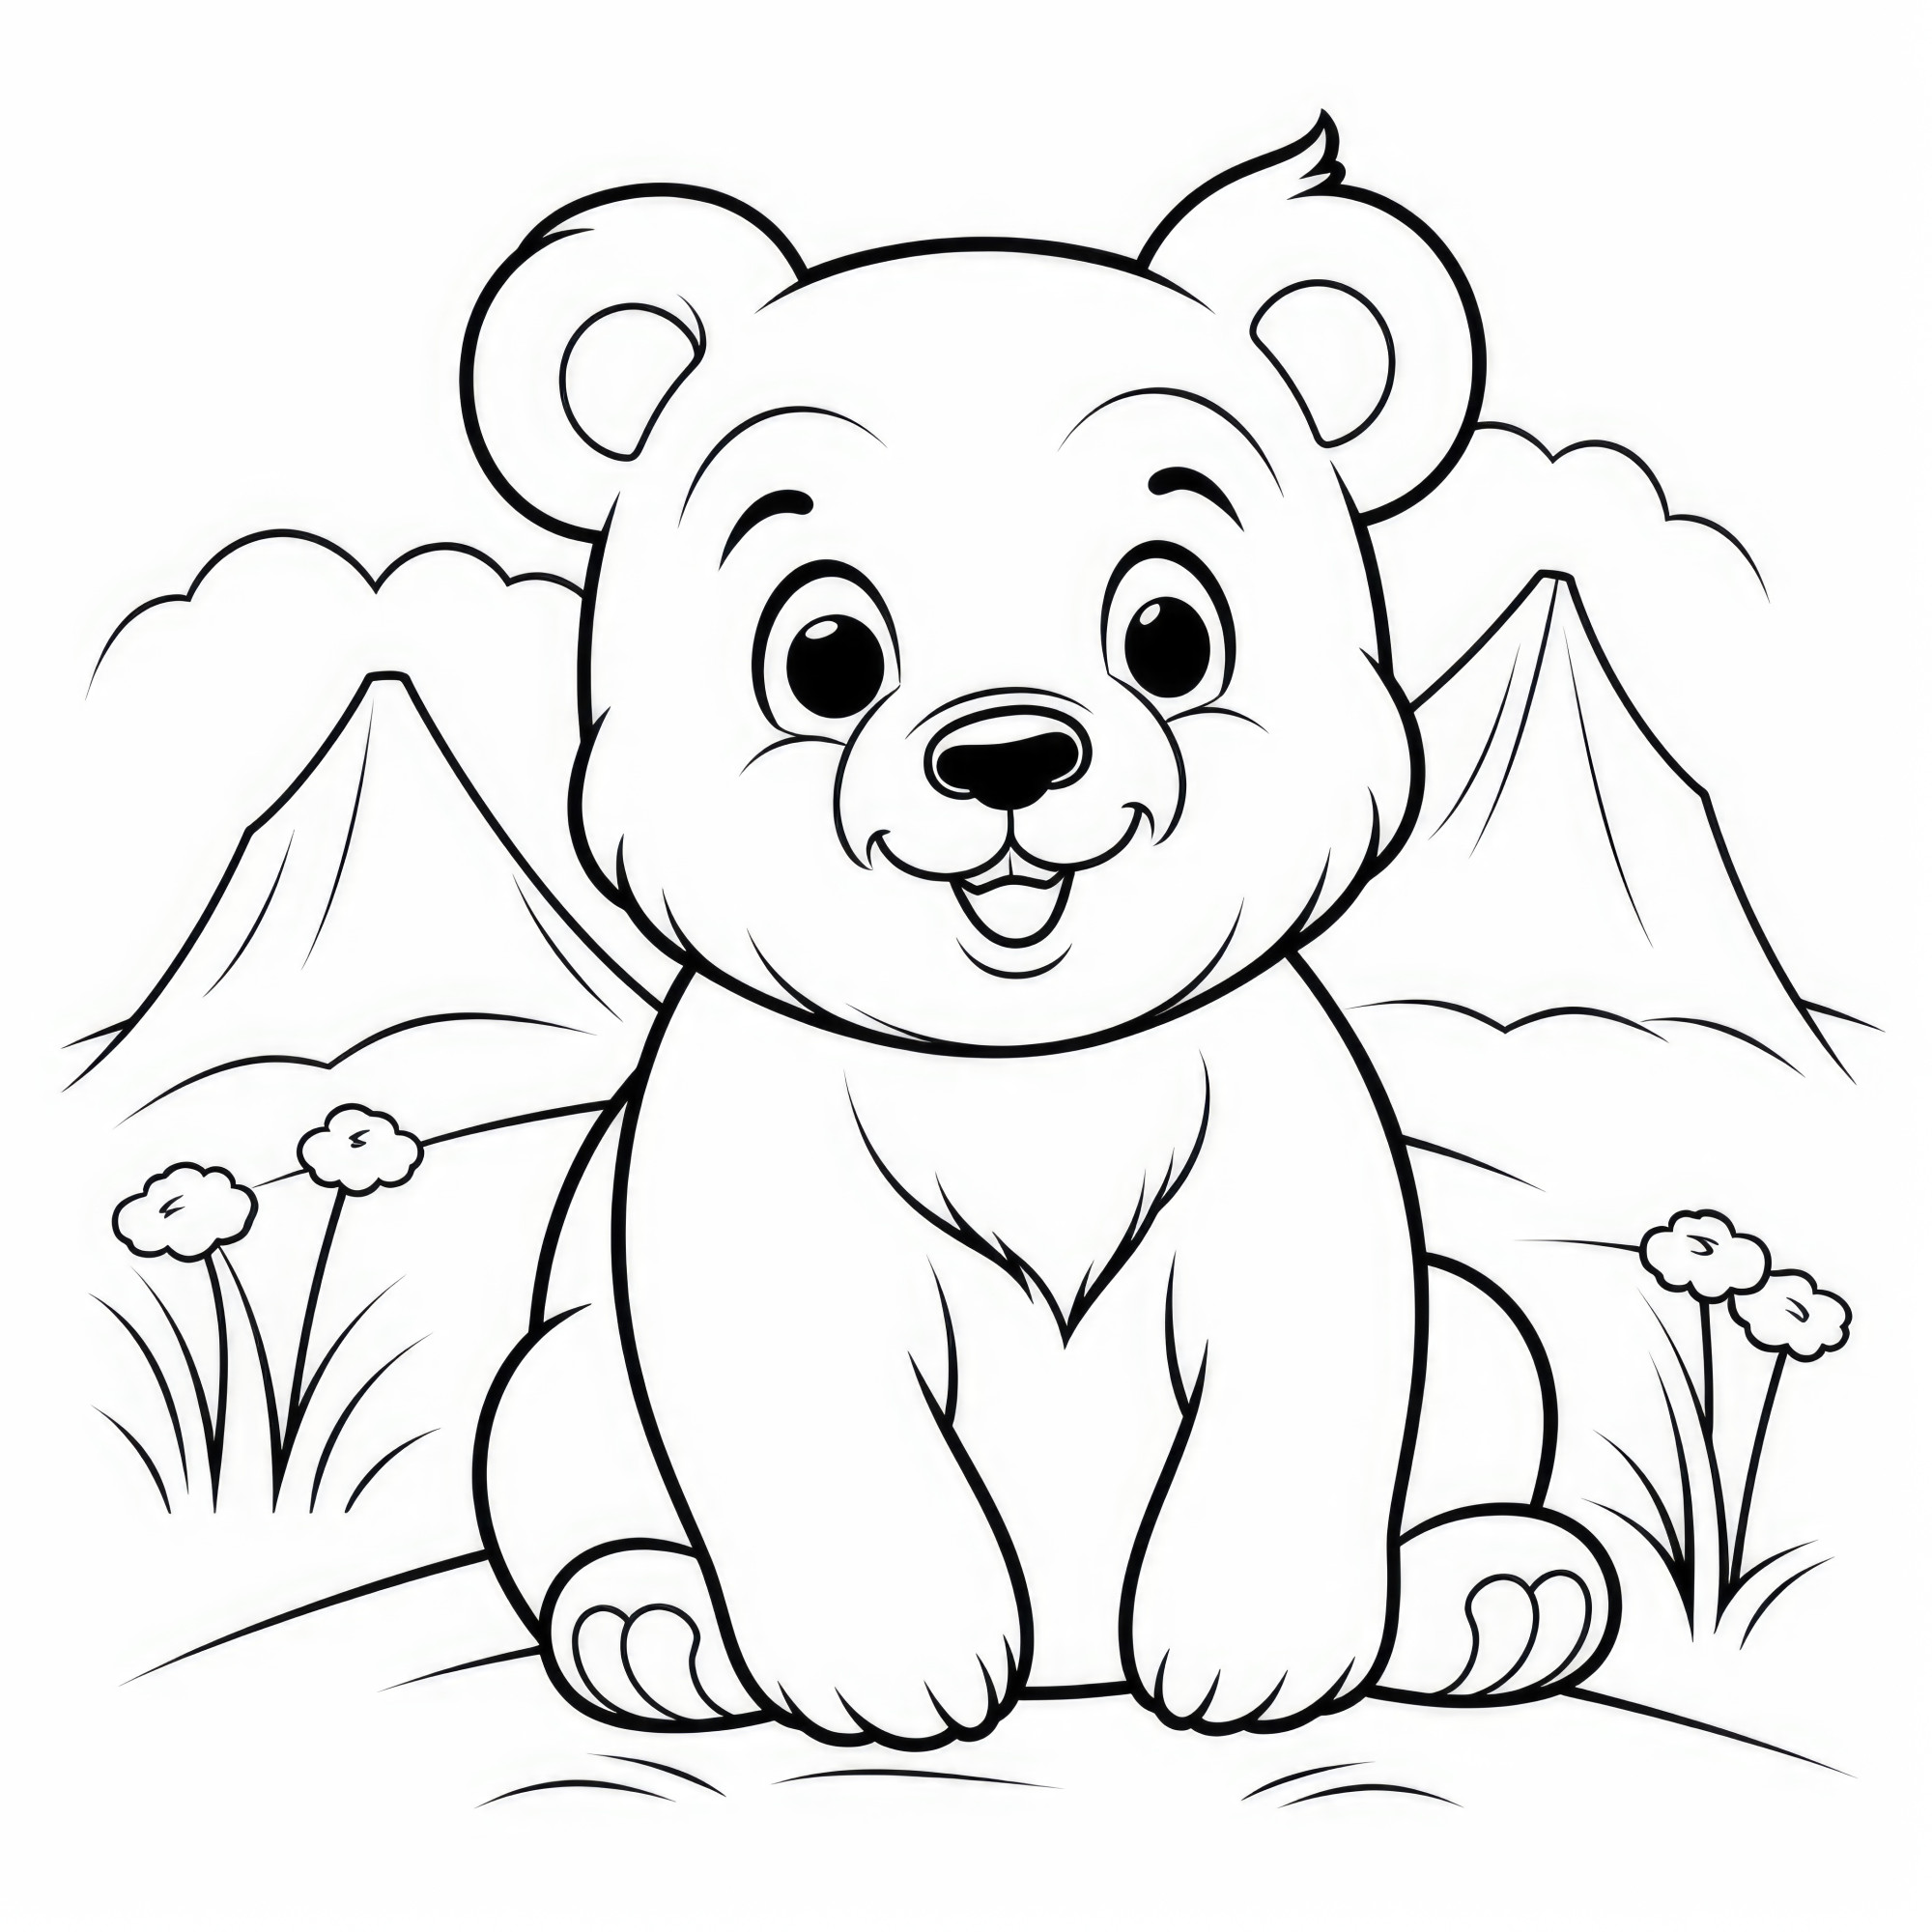 Раскраска для детей: ласковый медвежонок